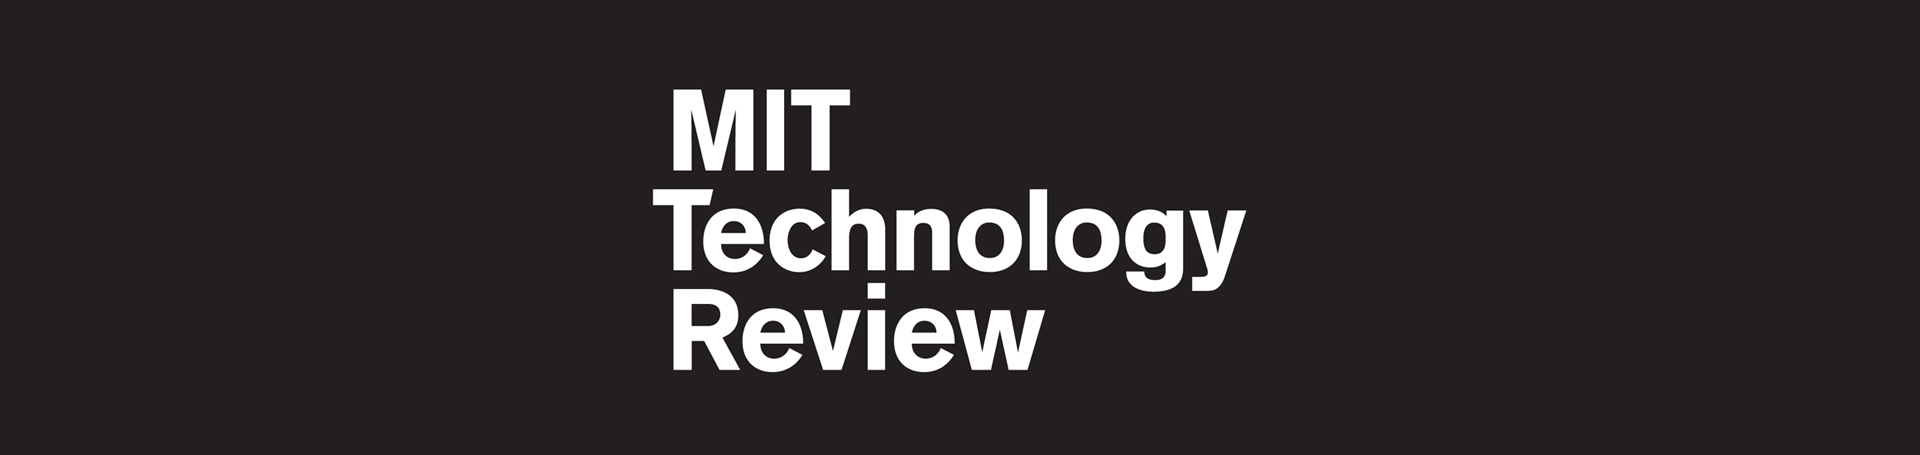 Por que o MIT é um celeiro de empreendedores?